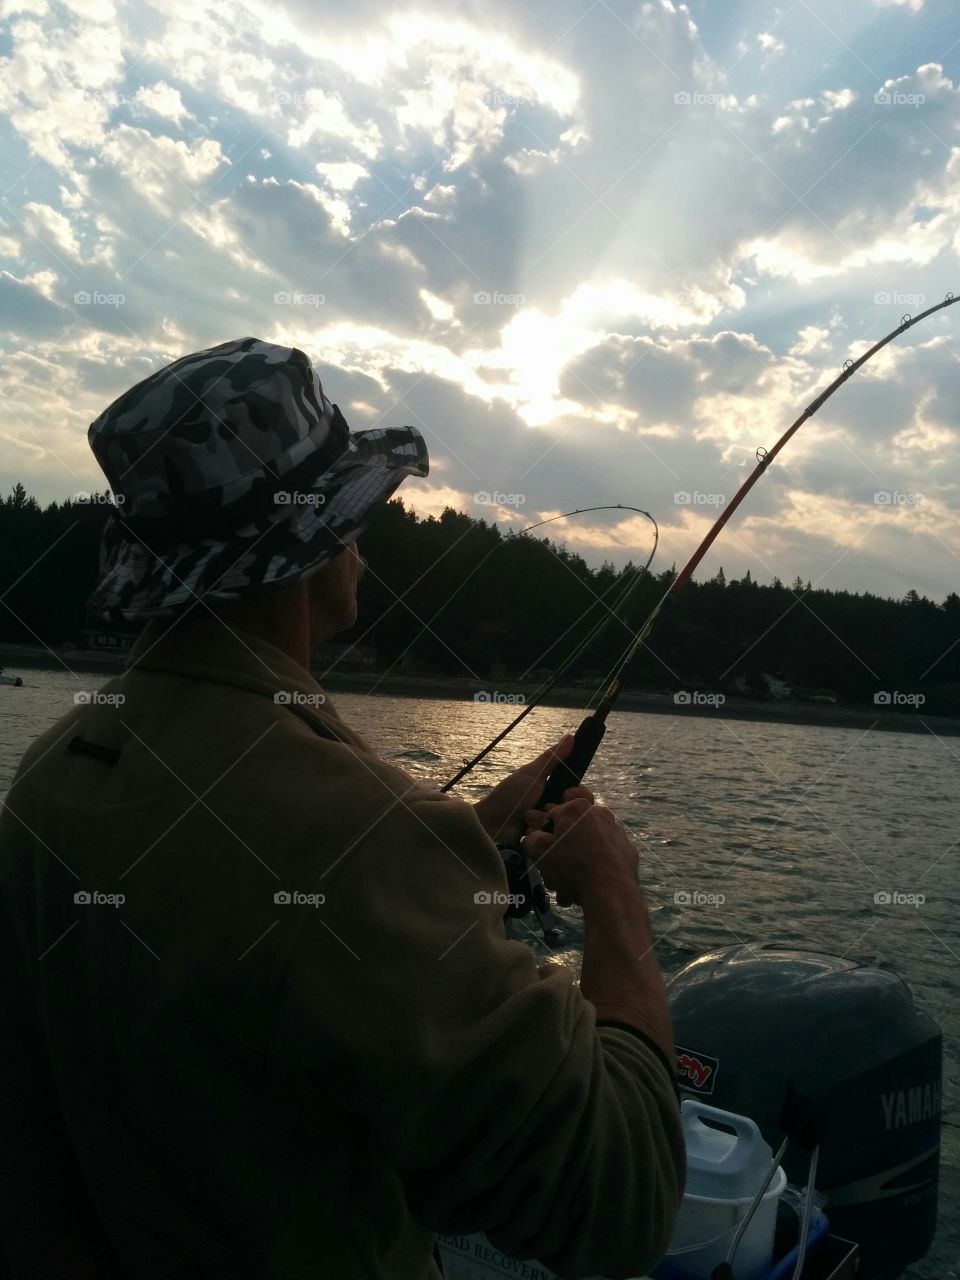 King fishing ! 